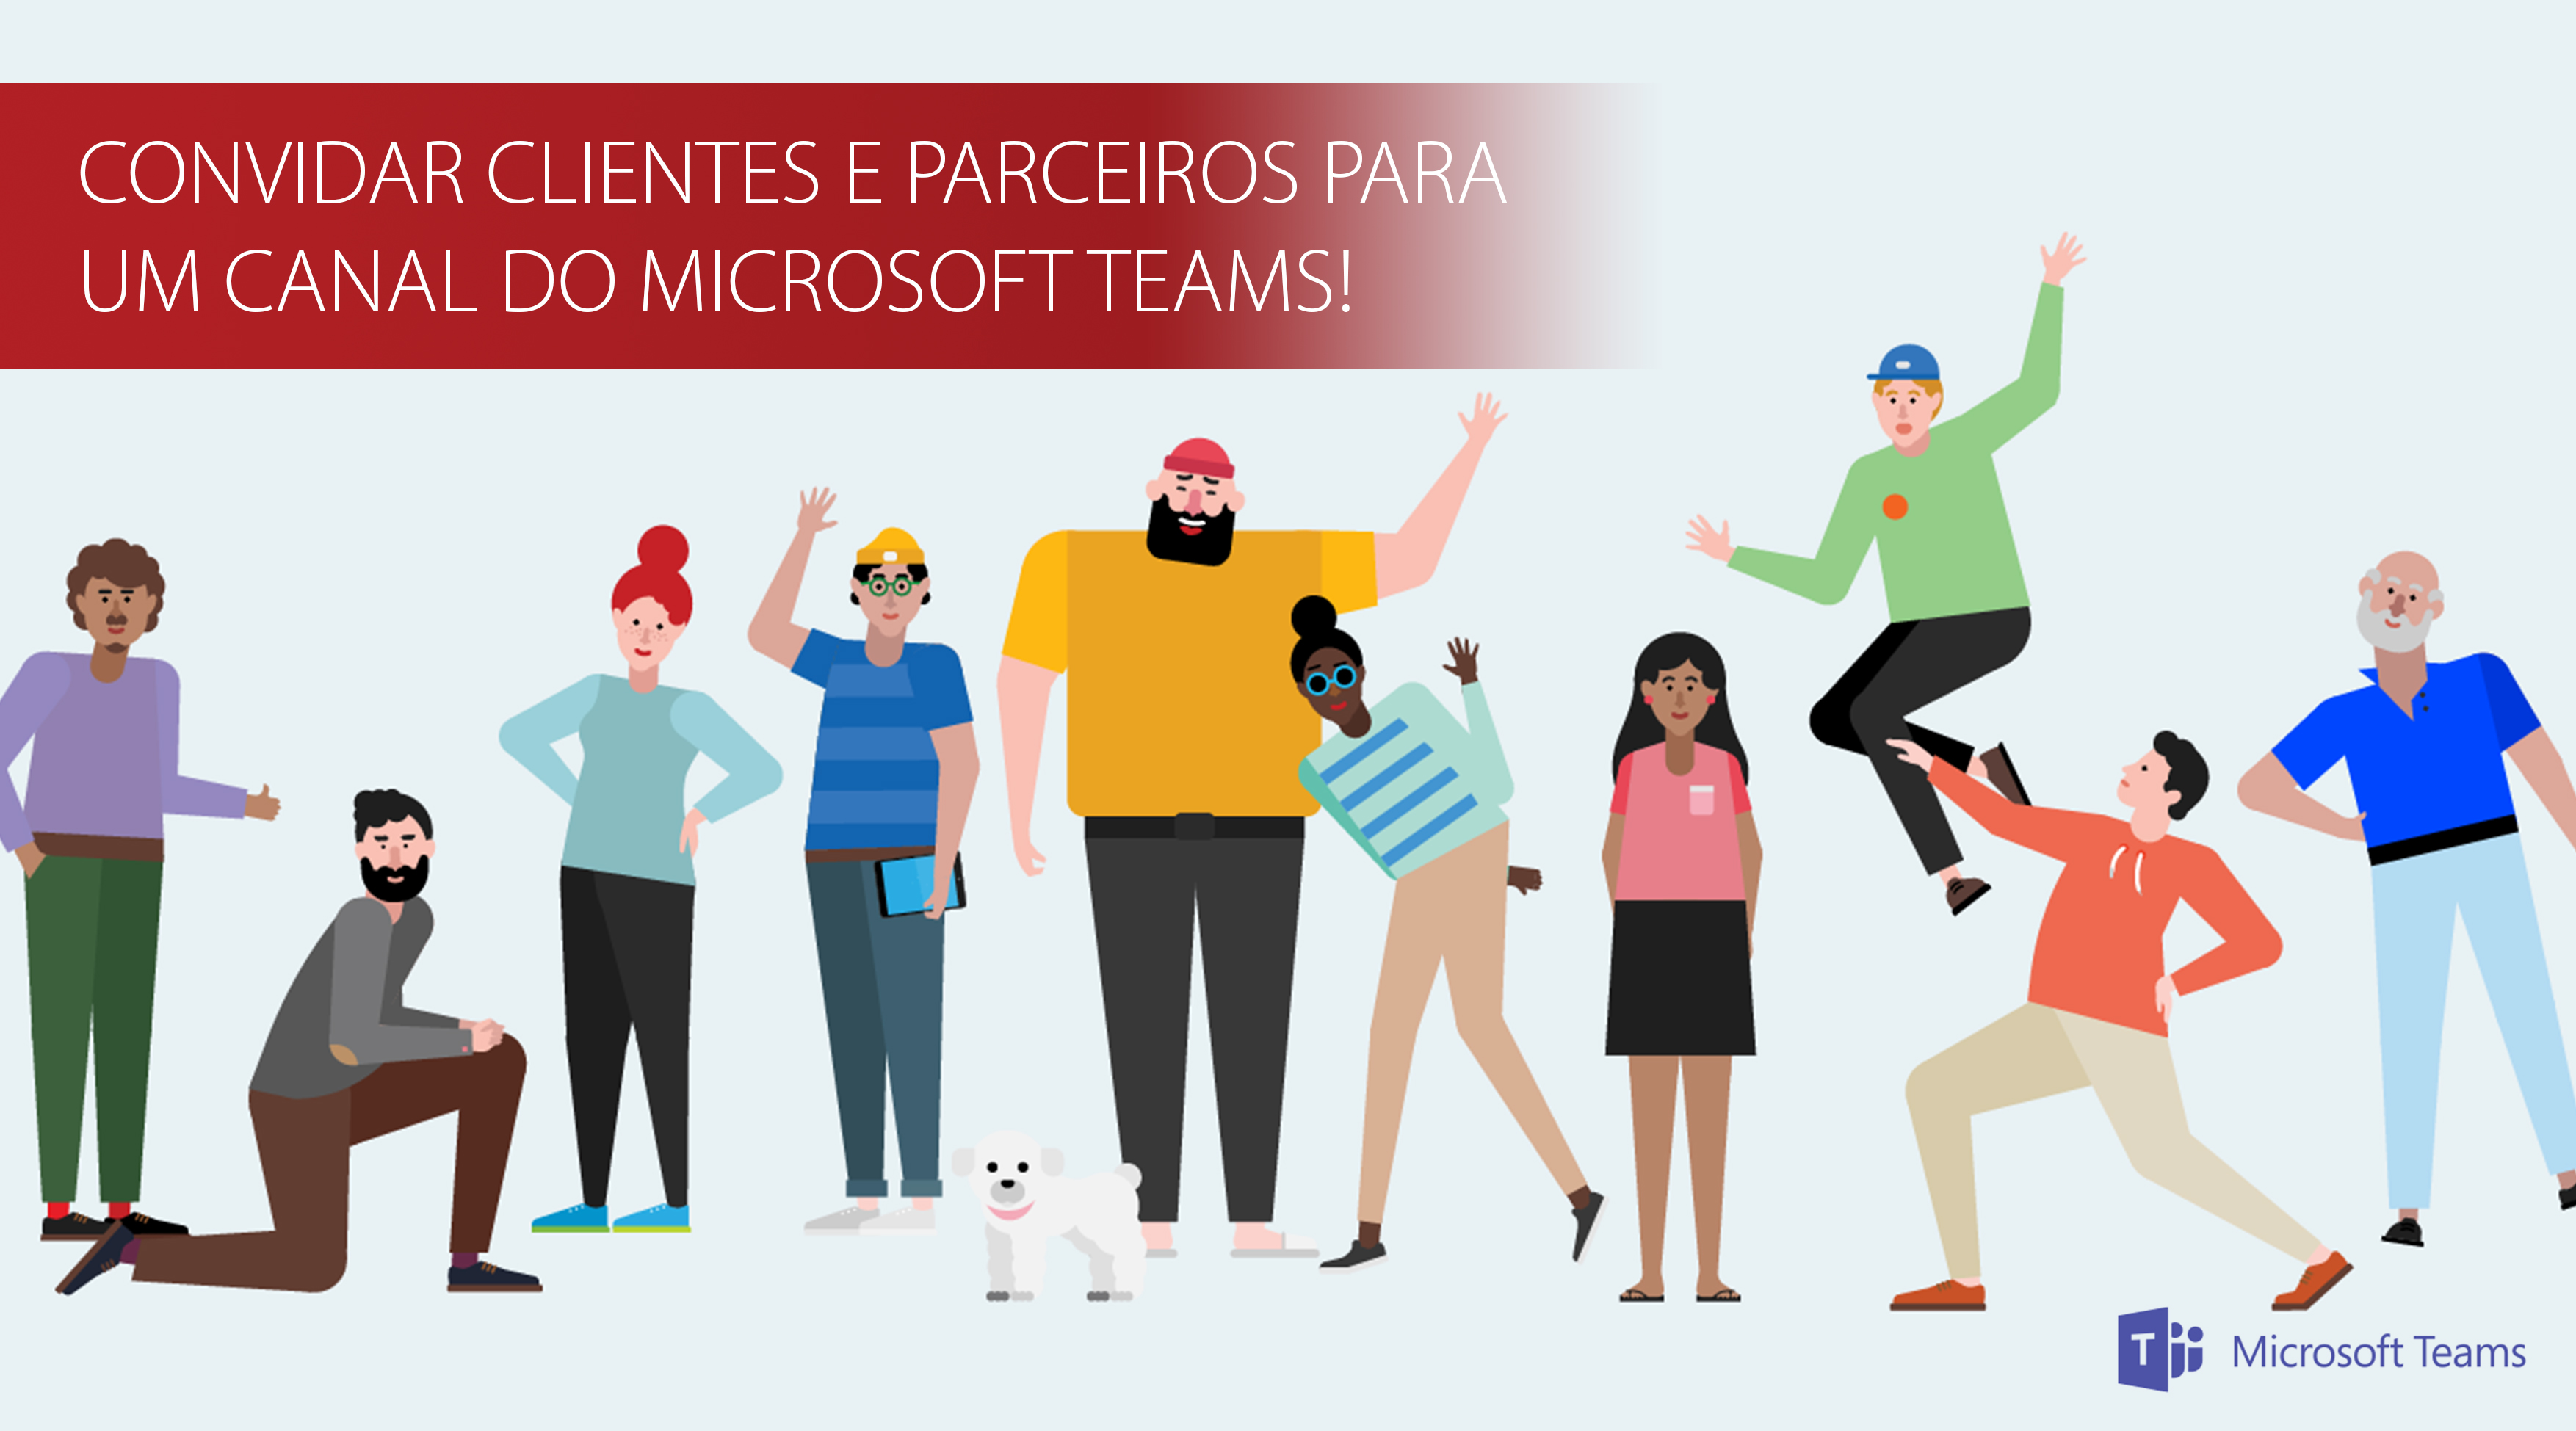 How to: Convidar clientes e parceiros para um canal do Microsoft Teams!